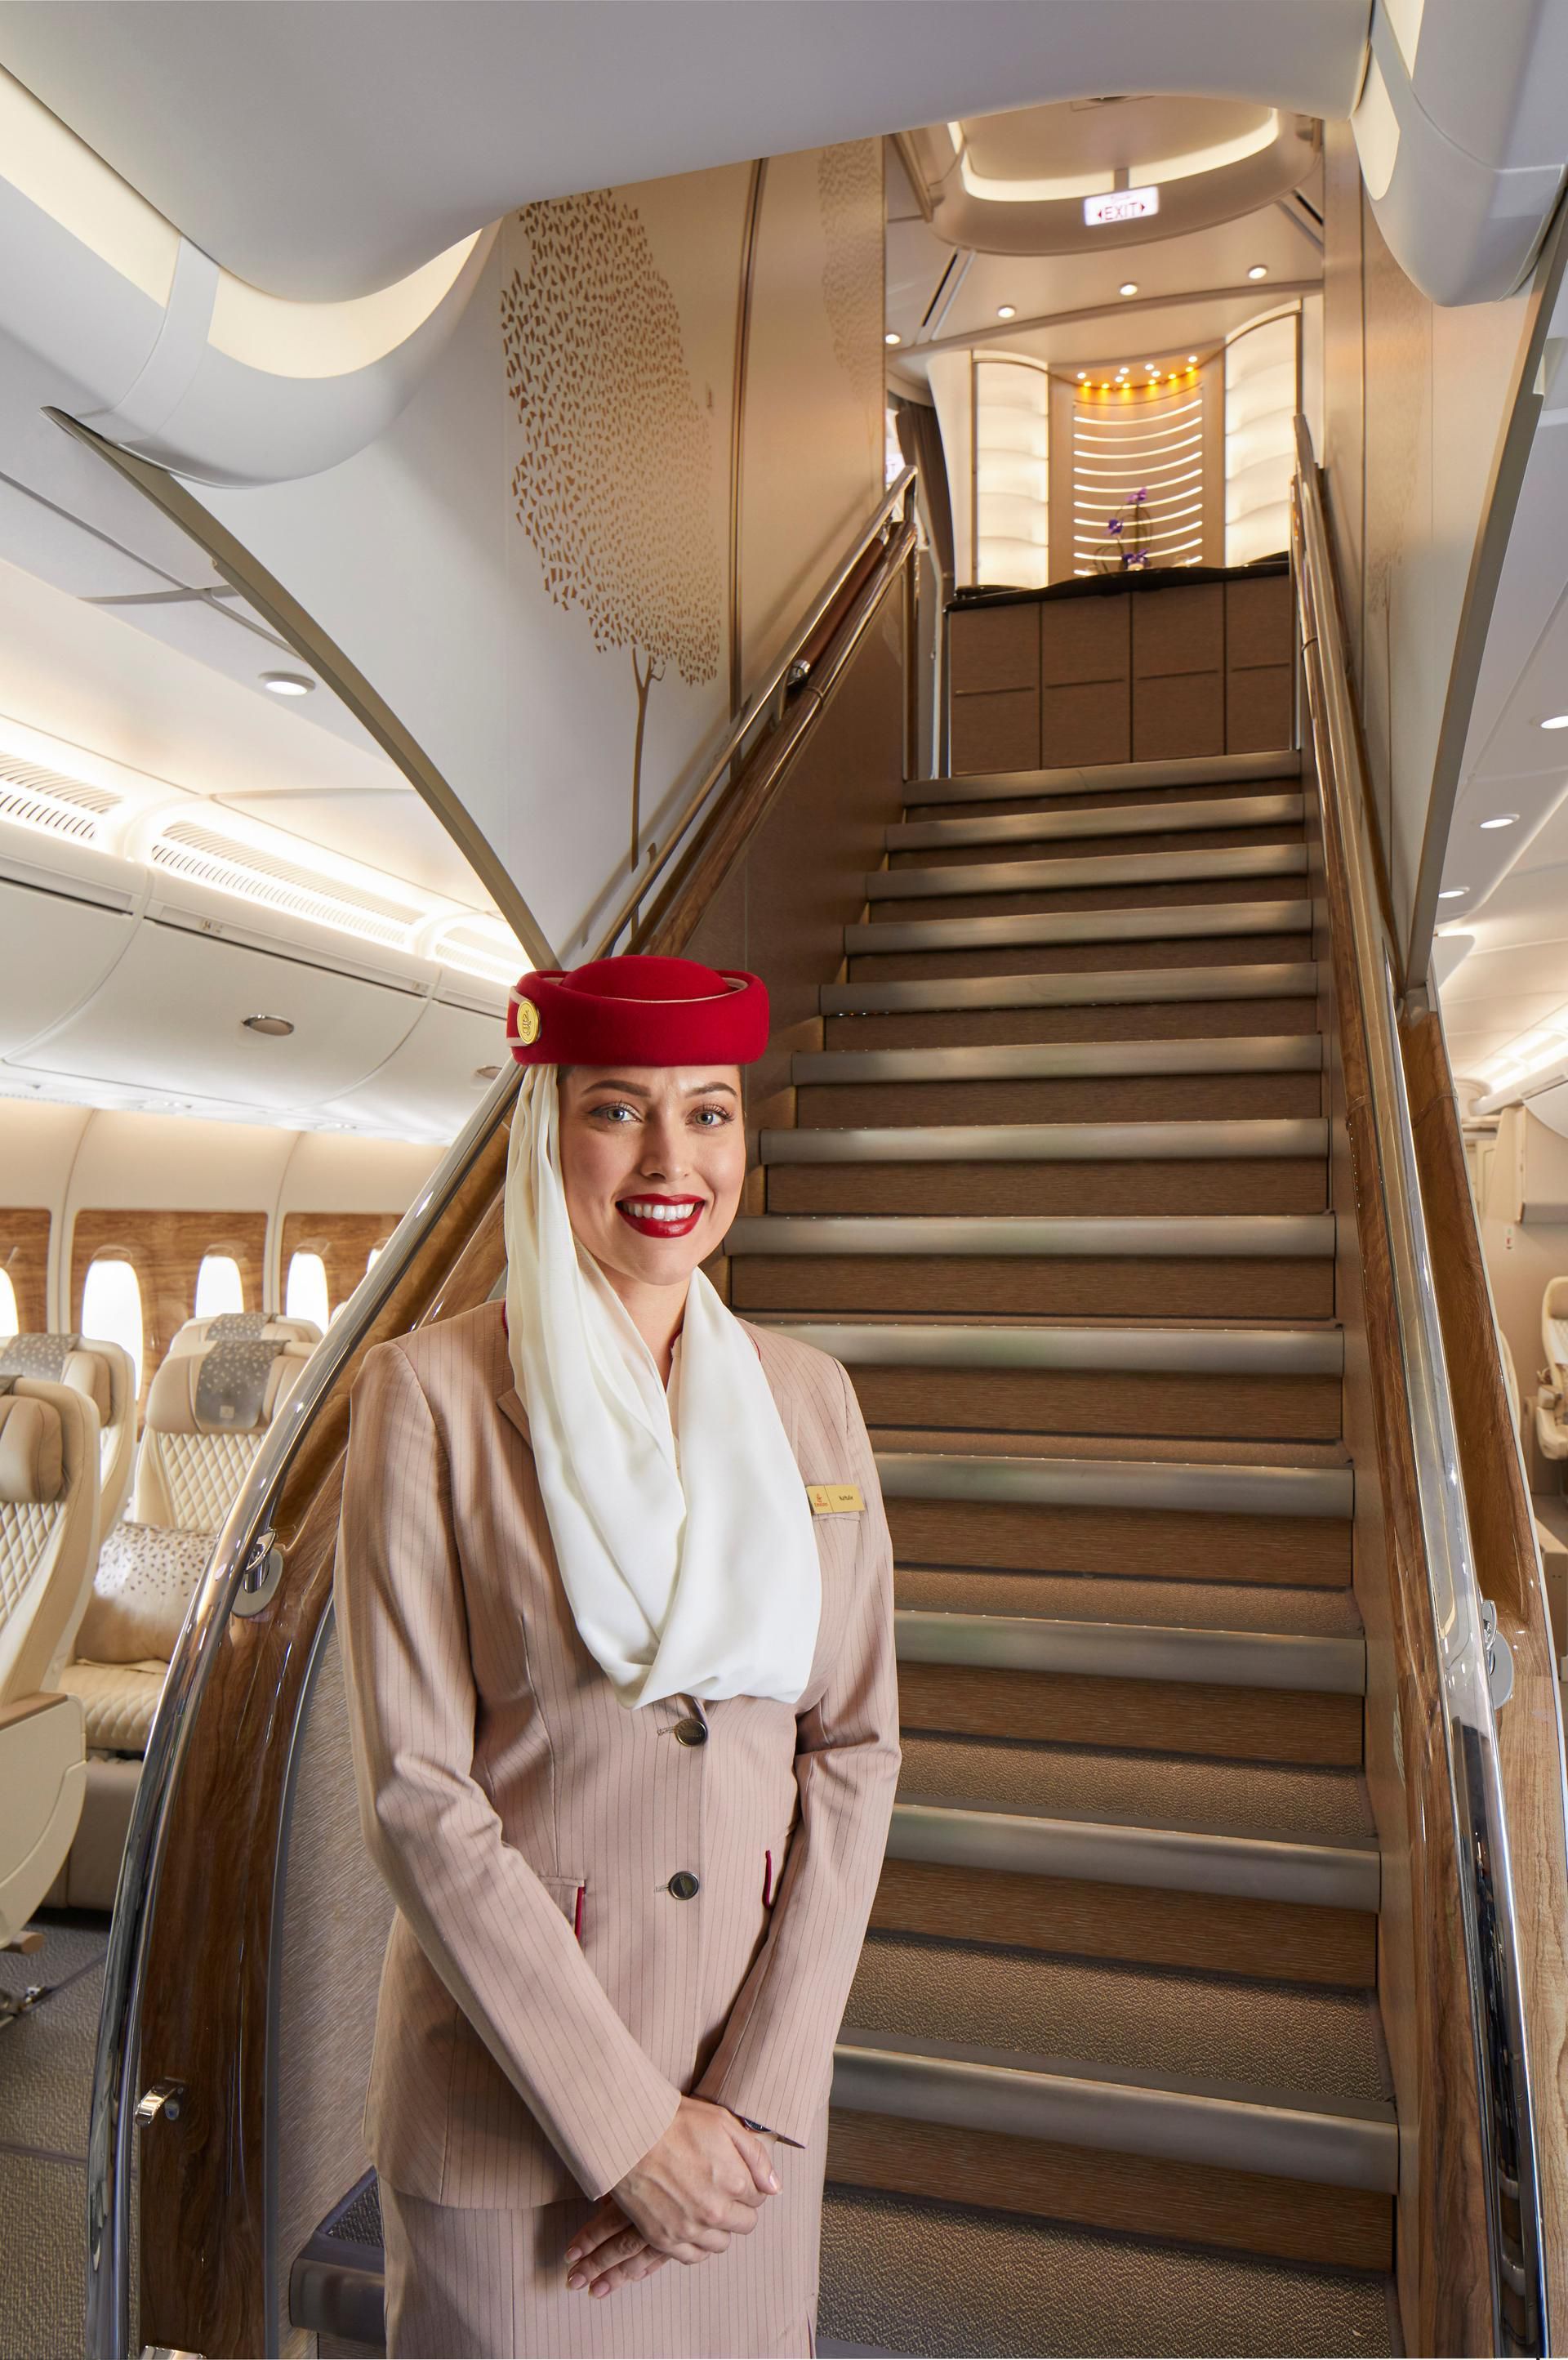 Сайт эмиратские авиалинии. Дубай Эмирейтс бизнес. А380 Эмирейтс. A380 Emirates. Emirates a800.